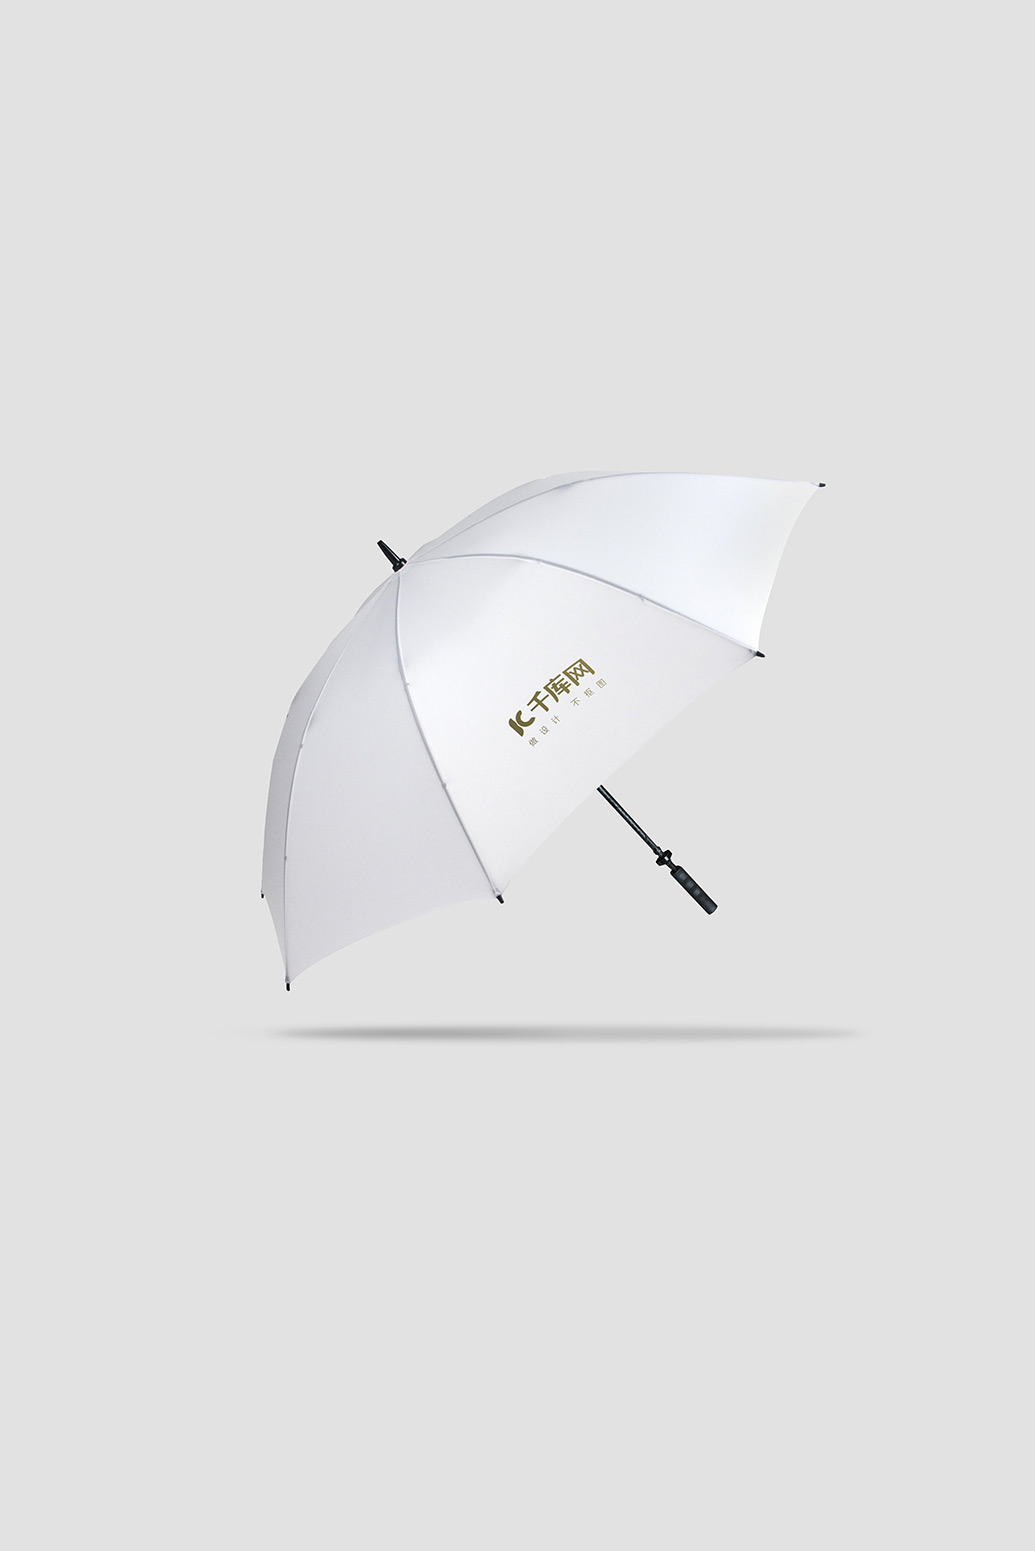 雨伞素材模板伞白色简约风格样机图片